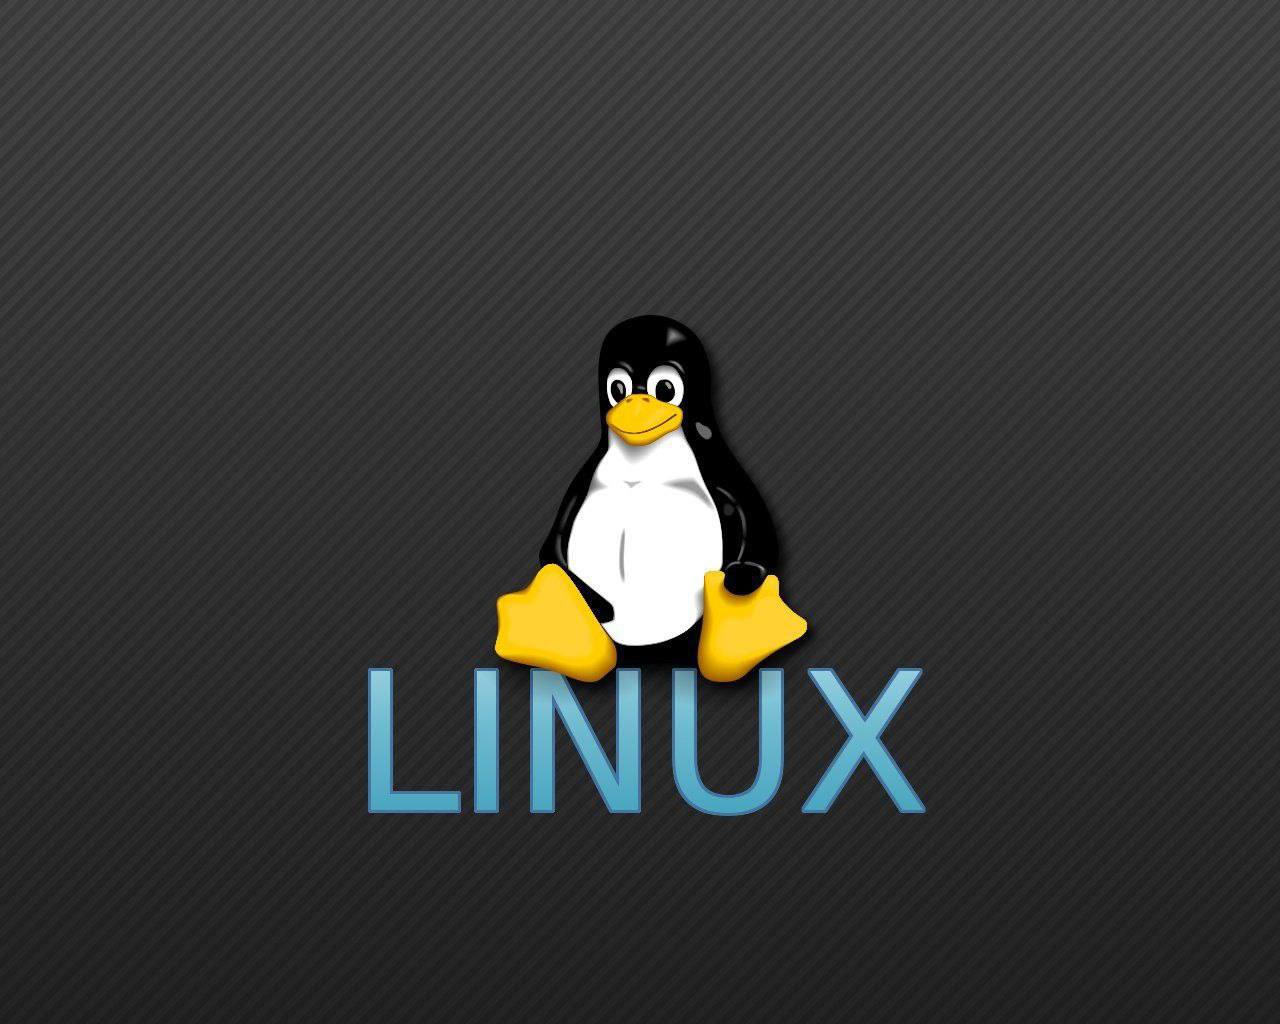 Vk linux. Линукс Операционная система логотип. Оперативная система Лунакс. Операционная система линекс. Операционная система линукс картинки.